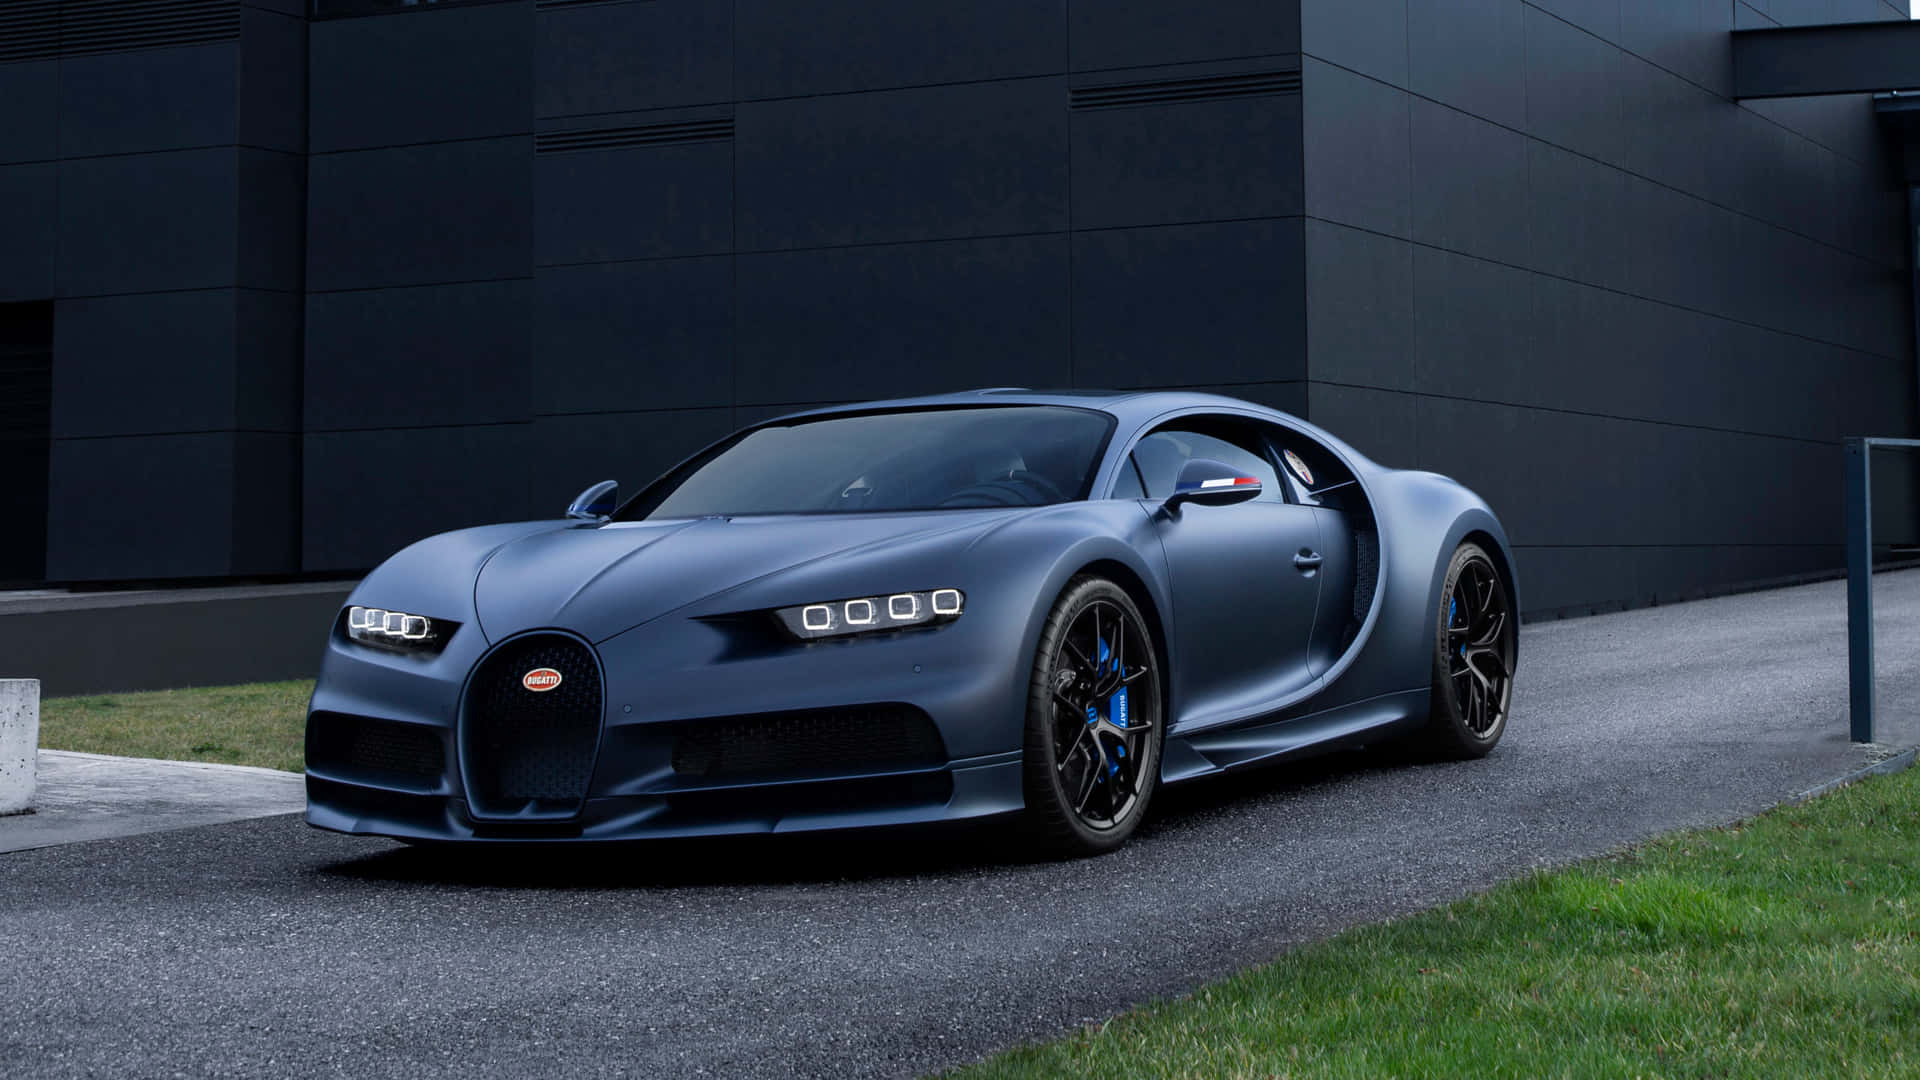 Recorrelas Calles Con Estilo Con Este Impresionante Bugatti